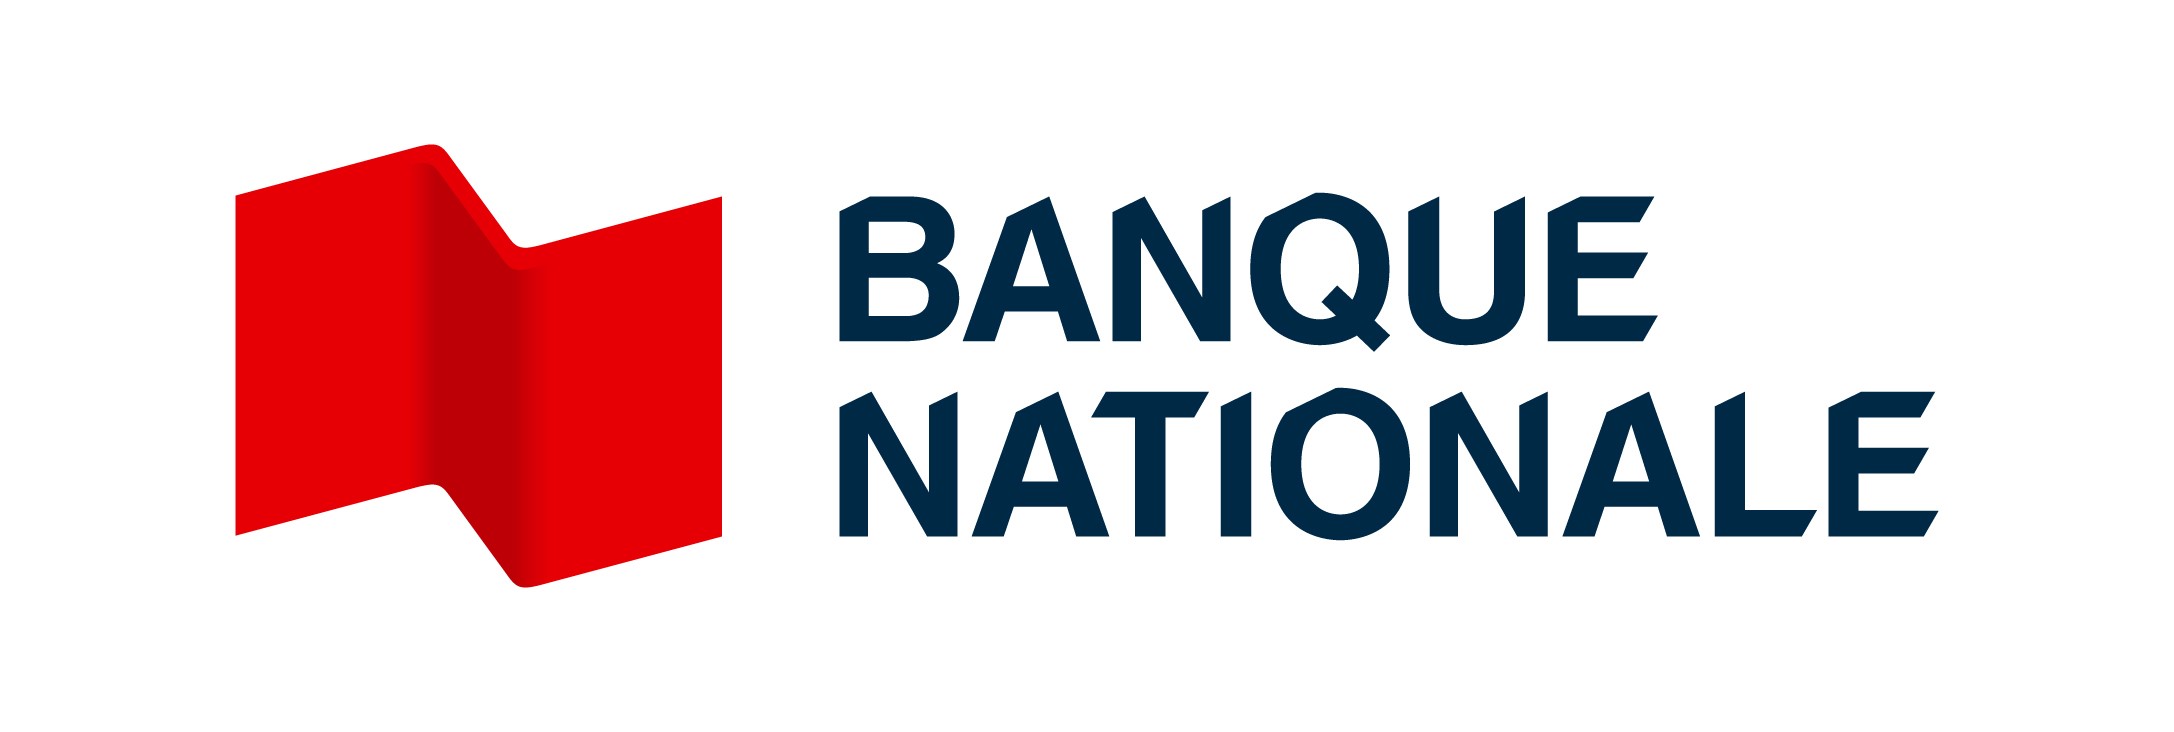 La Banque Nationale 